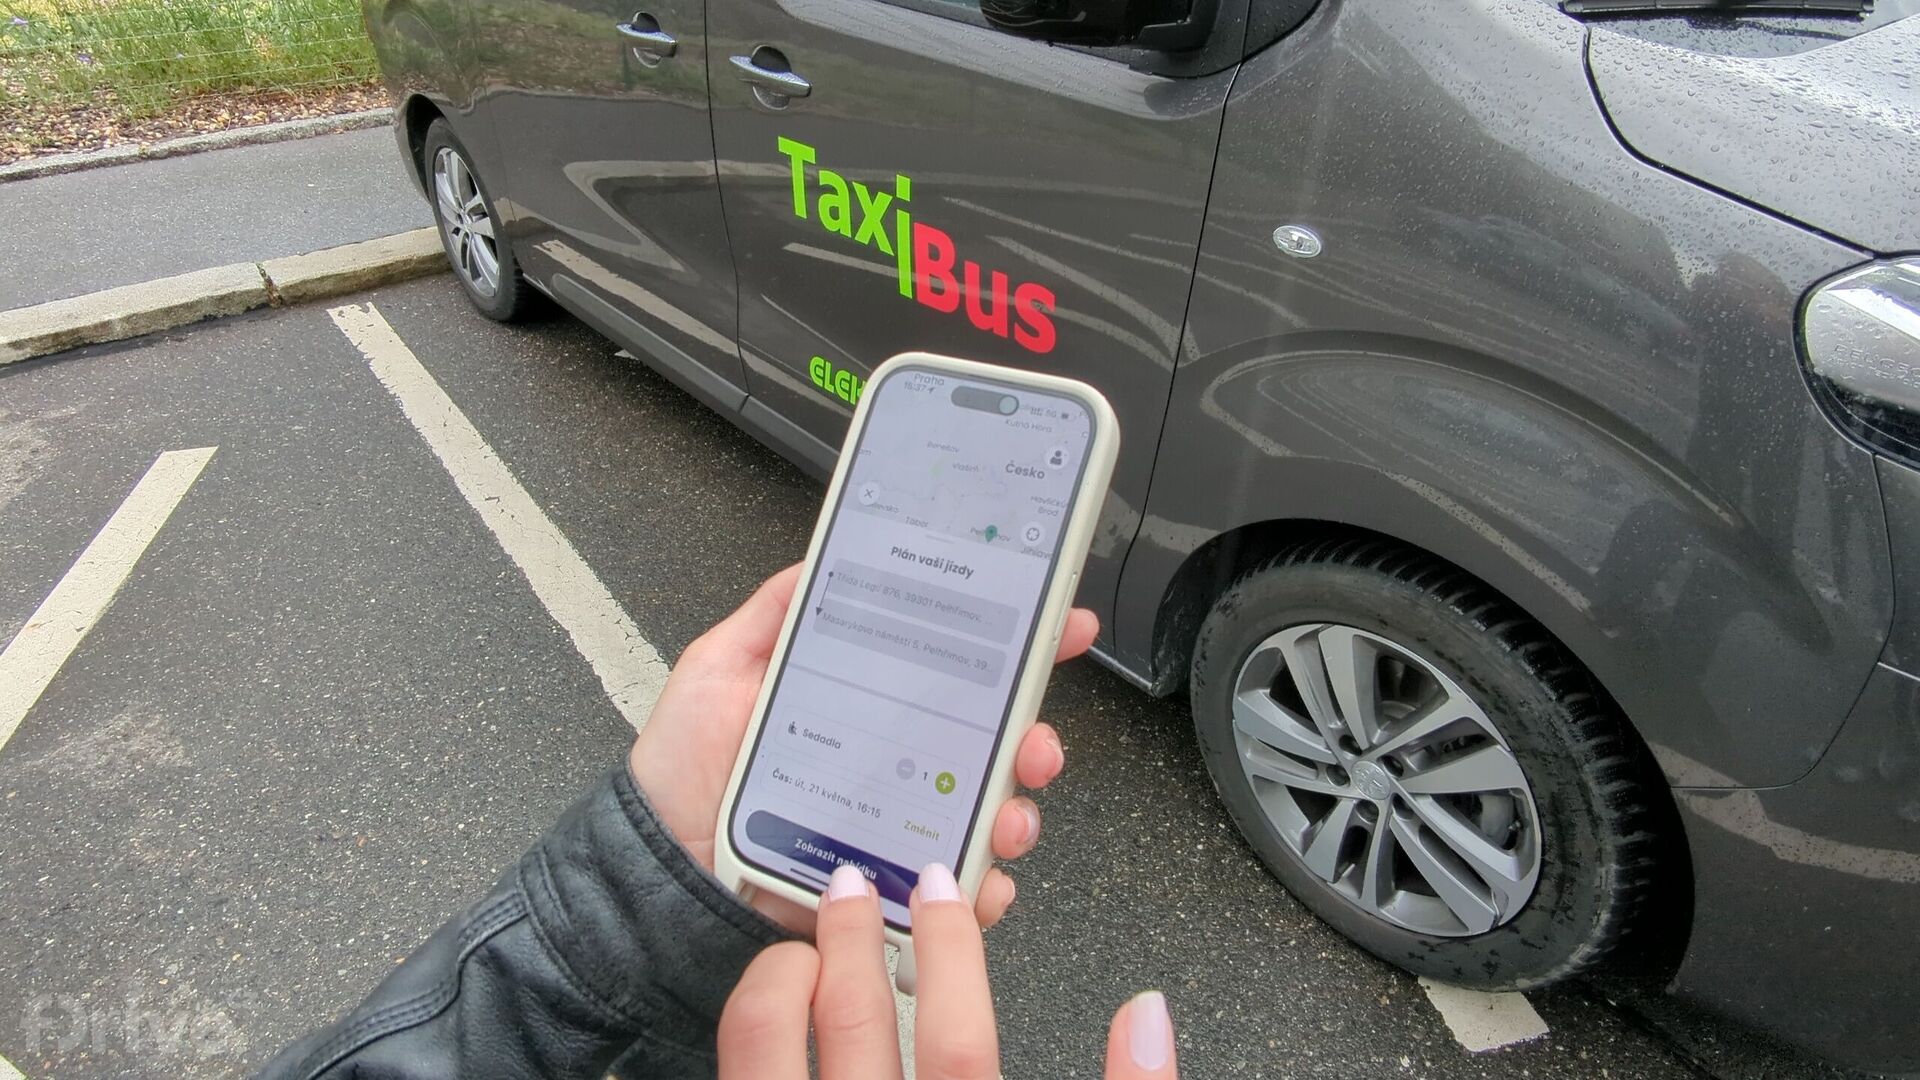 Aplikace TaxiBus